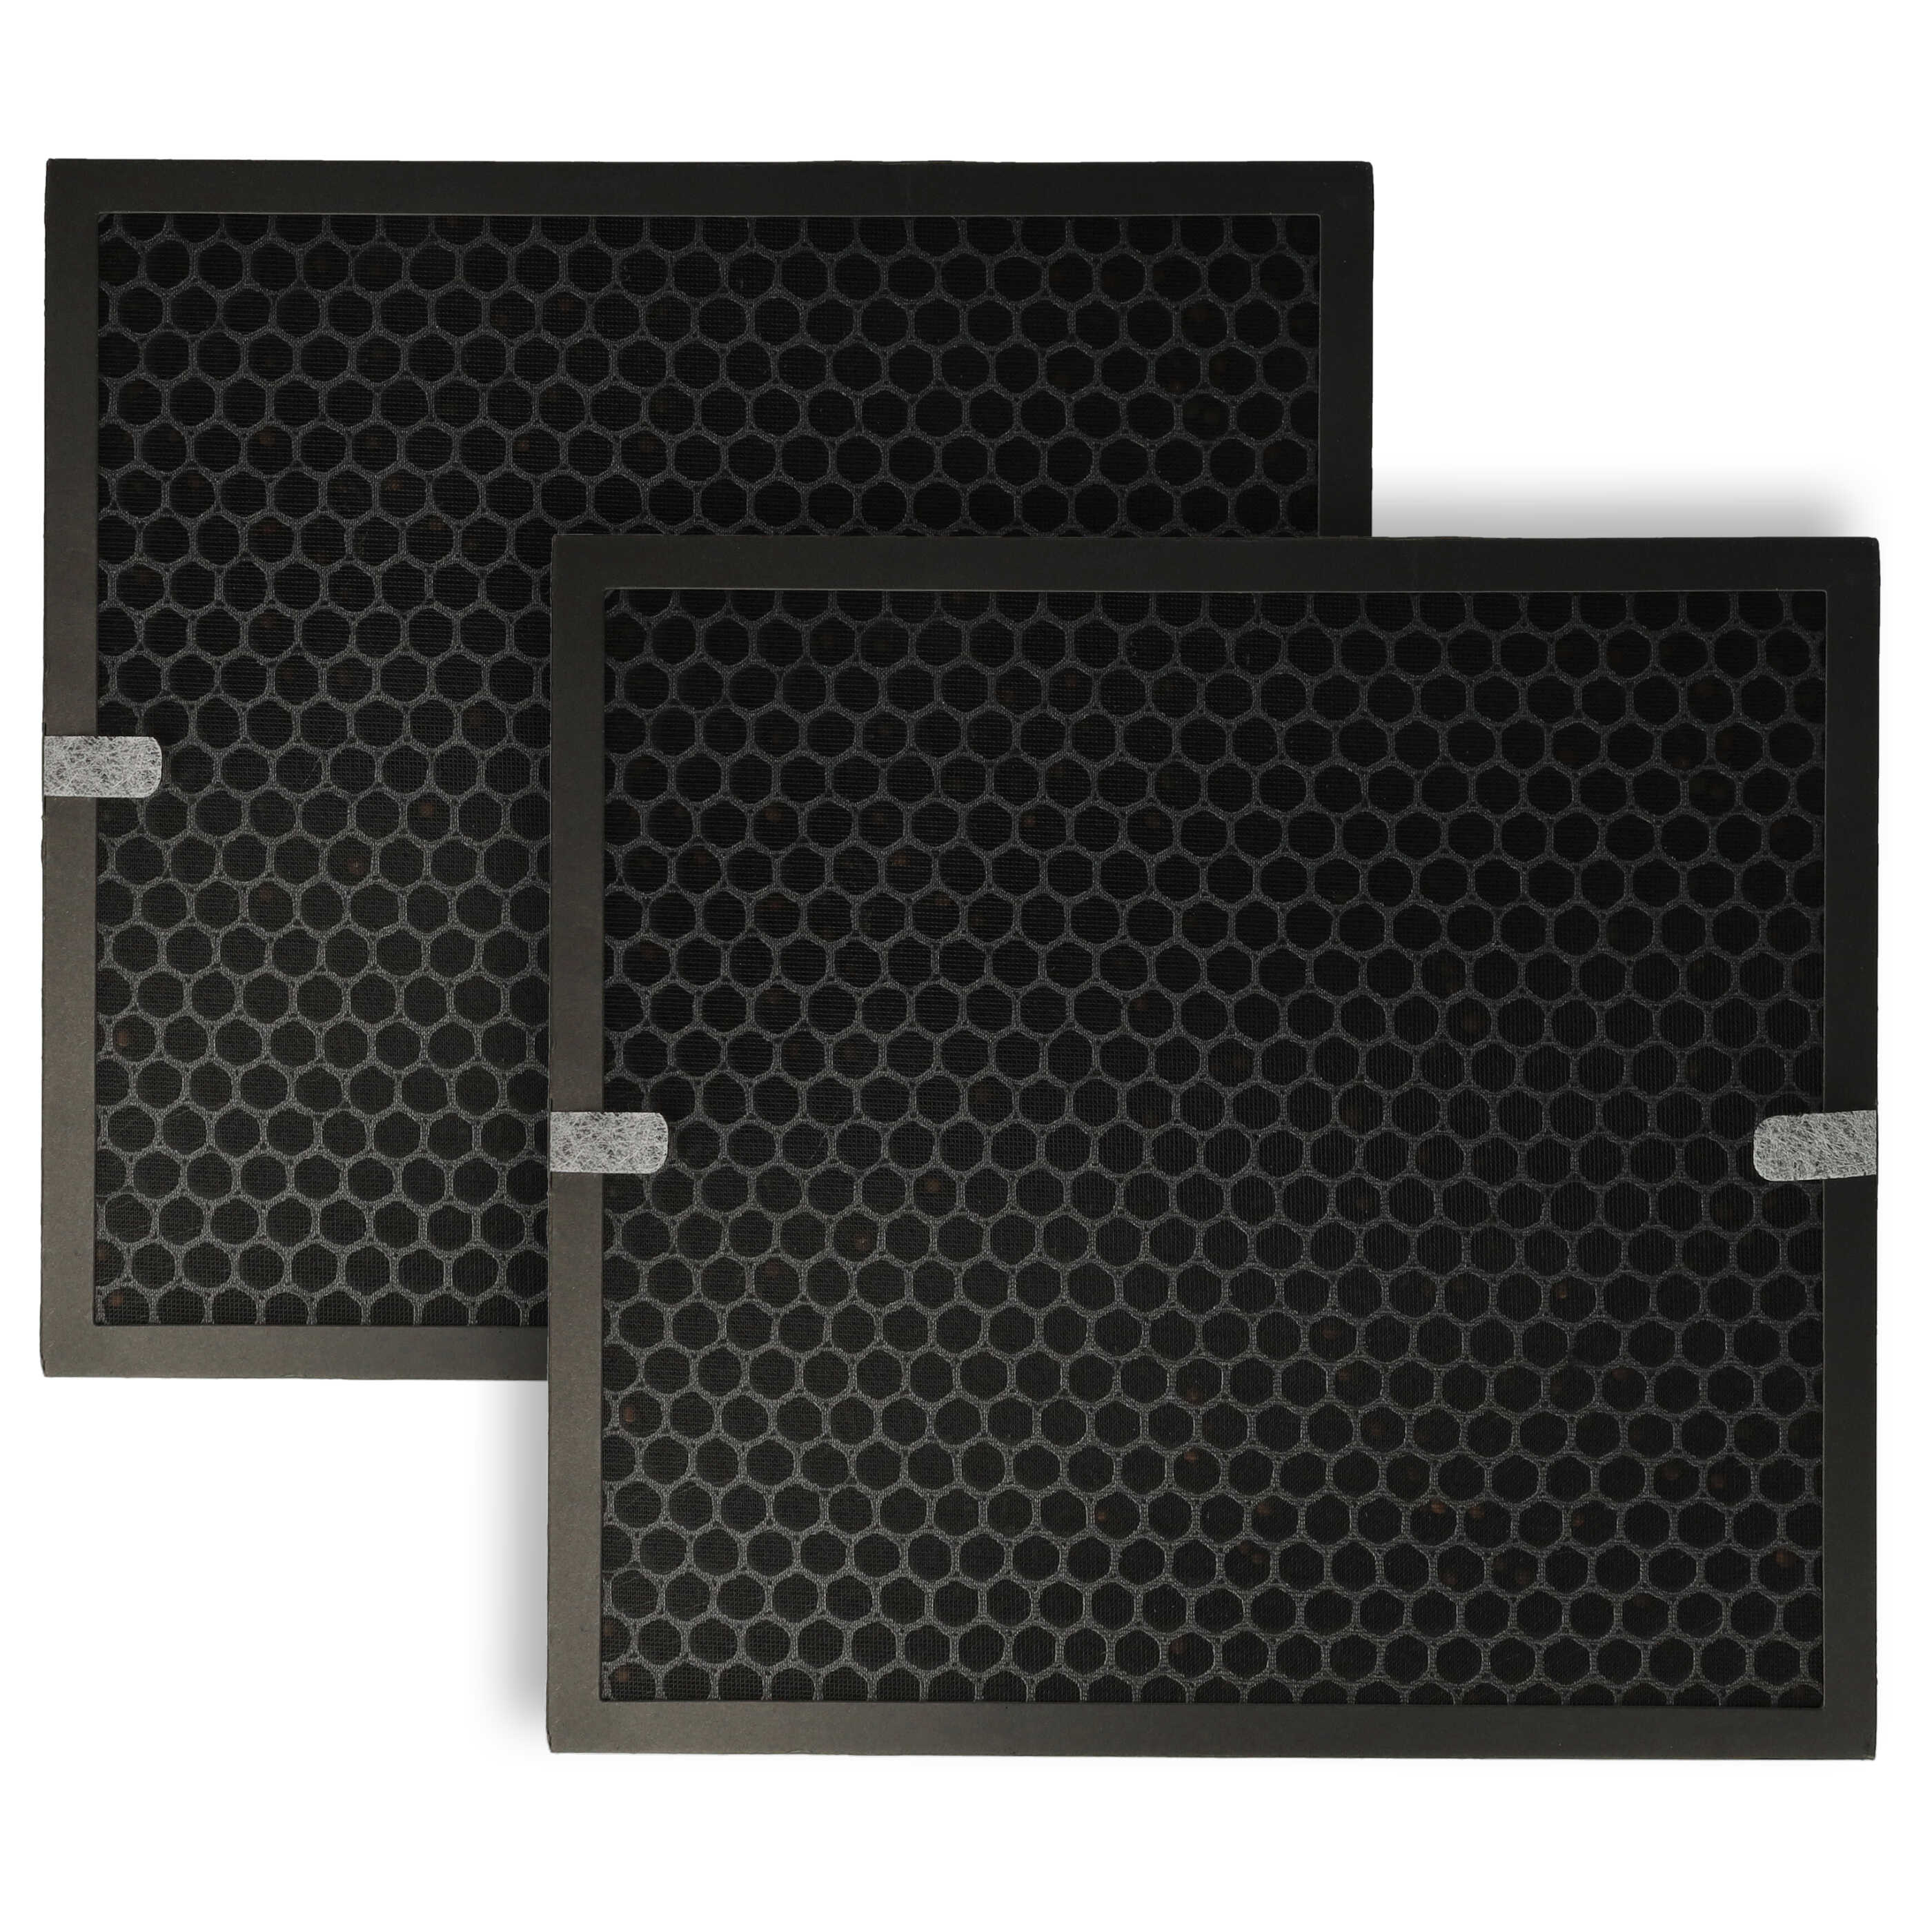 2x náhradný filter Philips AC4158/00 - HEPA + aktívne uhlie, 31,5 x 29 x 4 cm